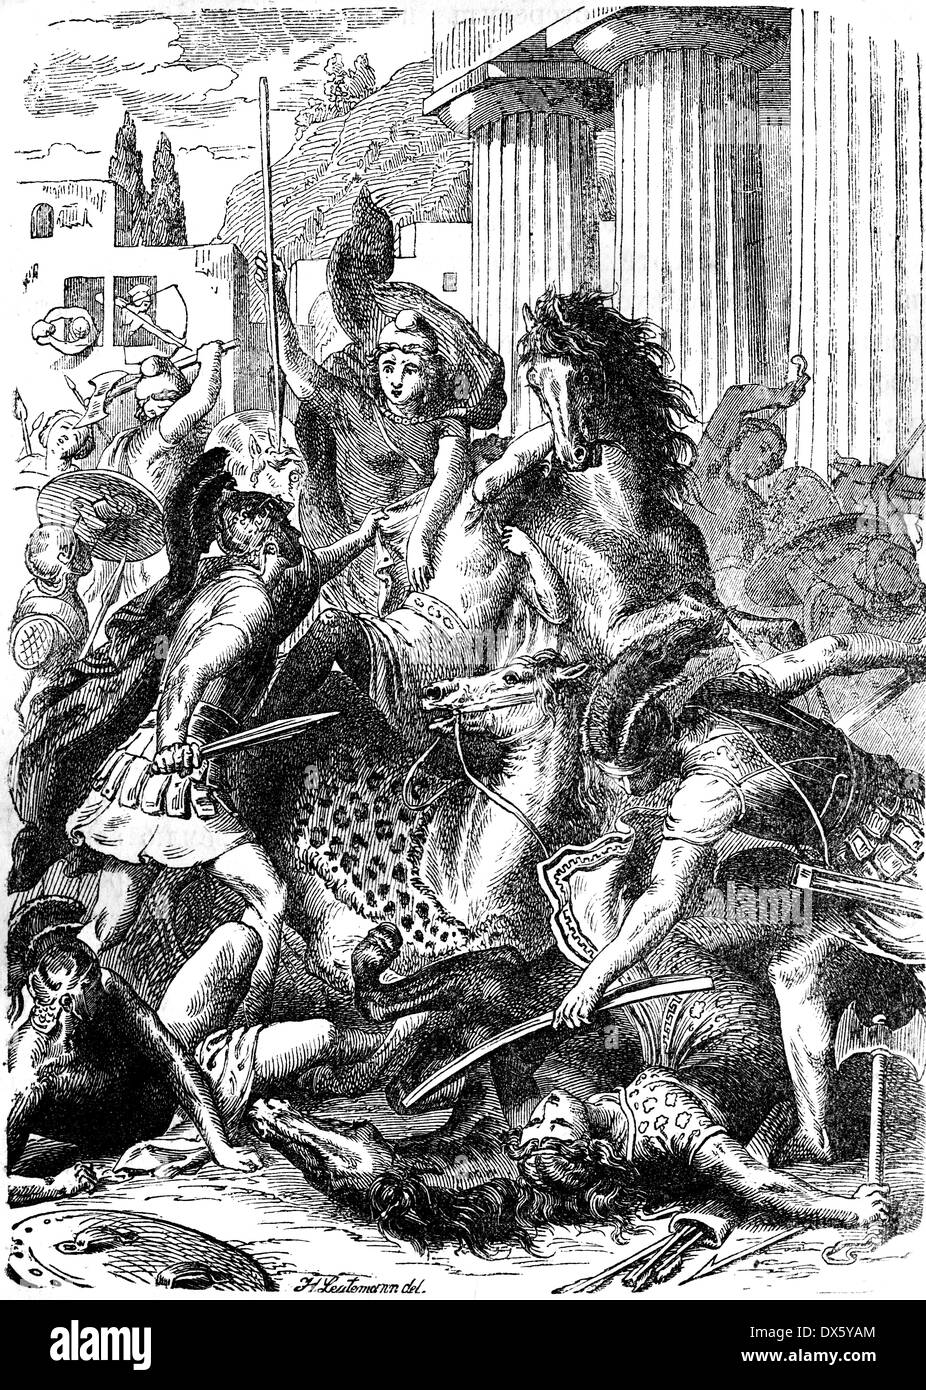 La bataille avec les Amazones, illustration de livre daté 1878 Banque D'Images